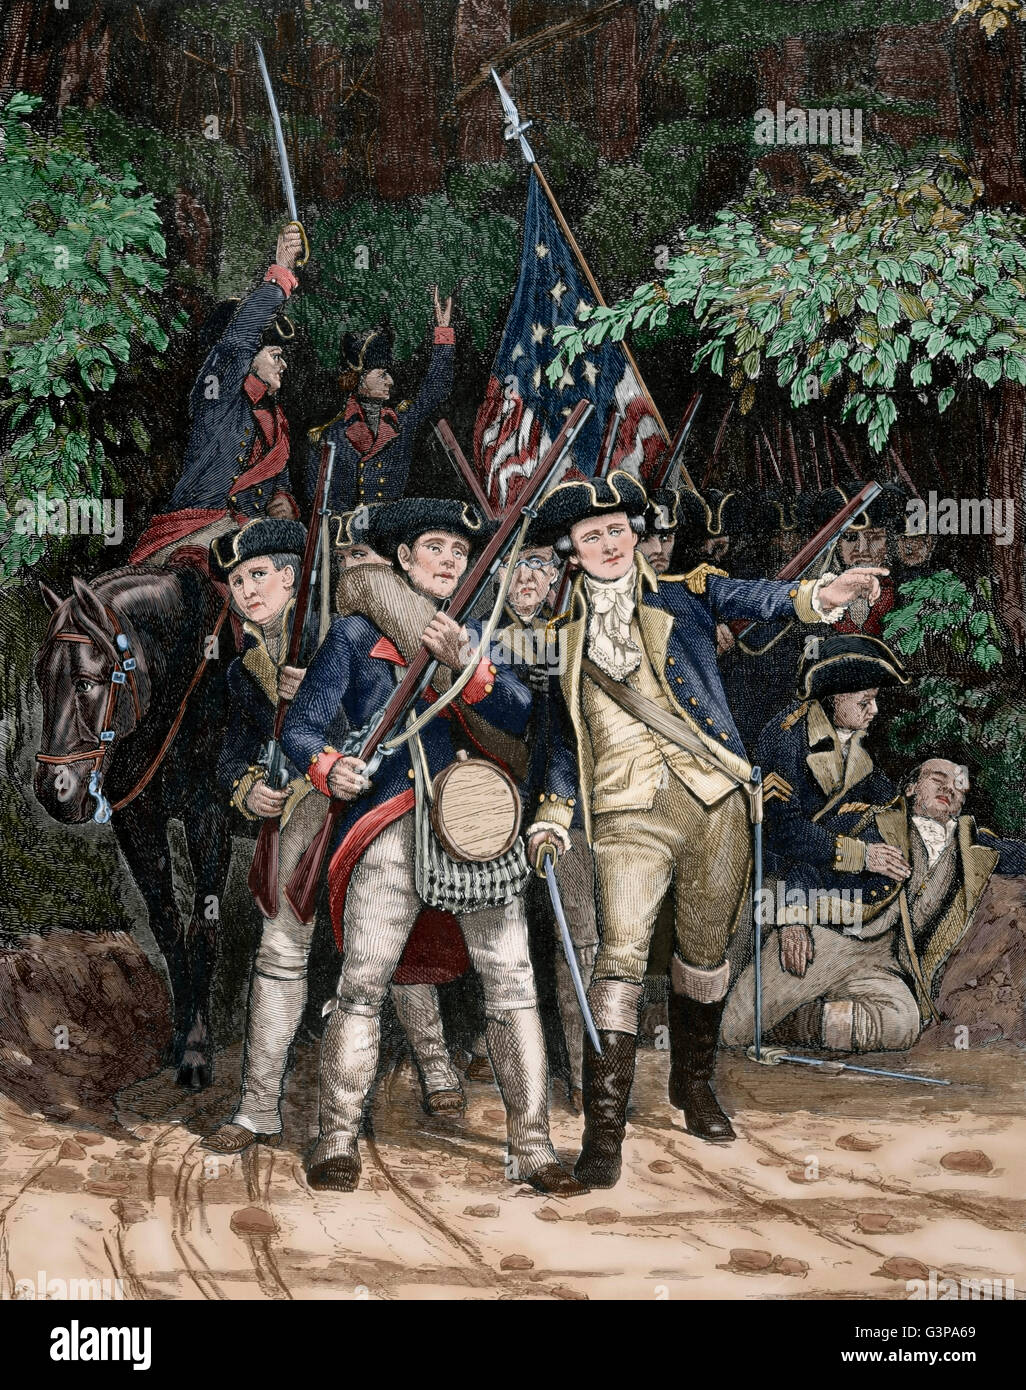 Guerre d'Indépendance américaine (1775-1783). Les soldats de la révolution américaine. Gravure par Julian Scott dans le Harper's Weekly, 1876. De couleur. Banque D'Images